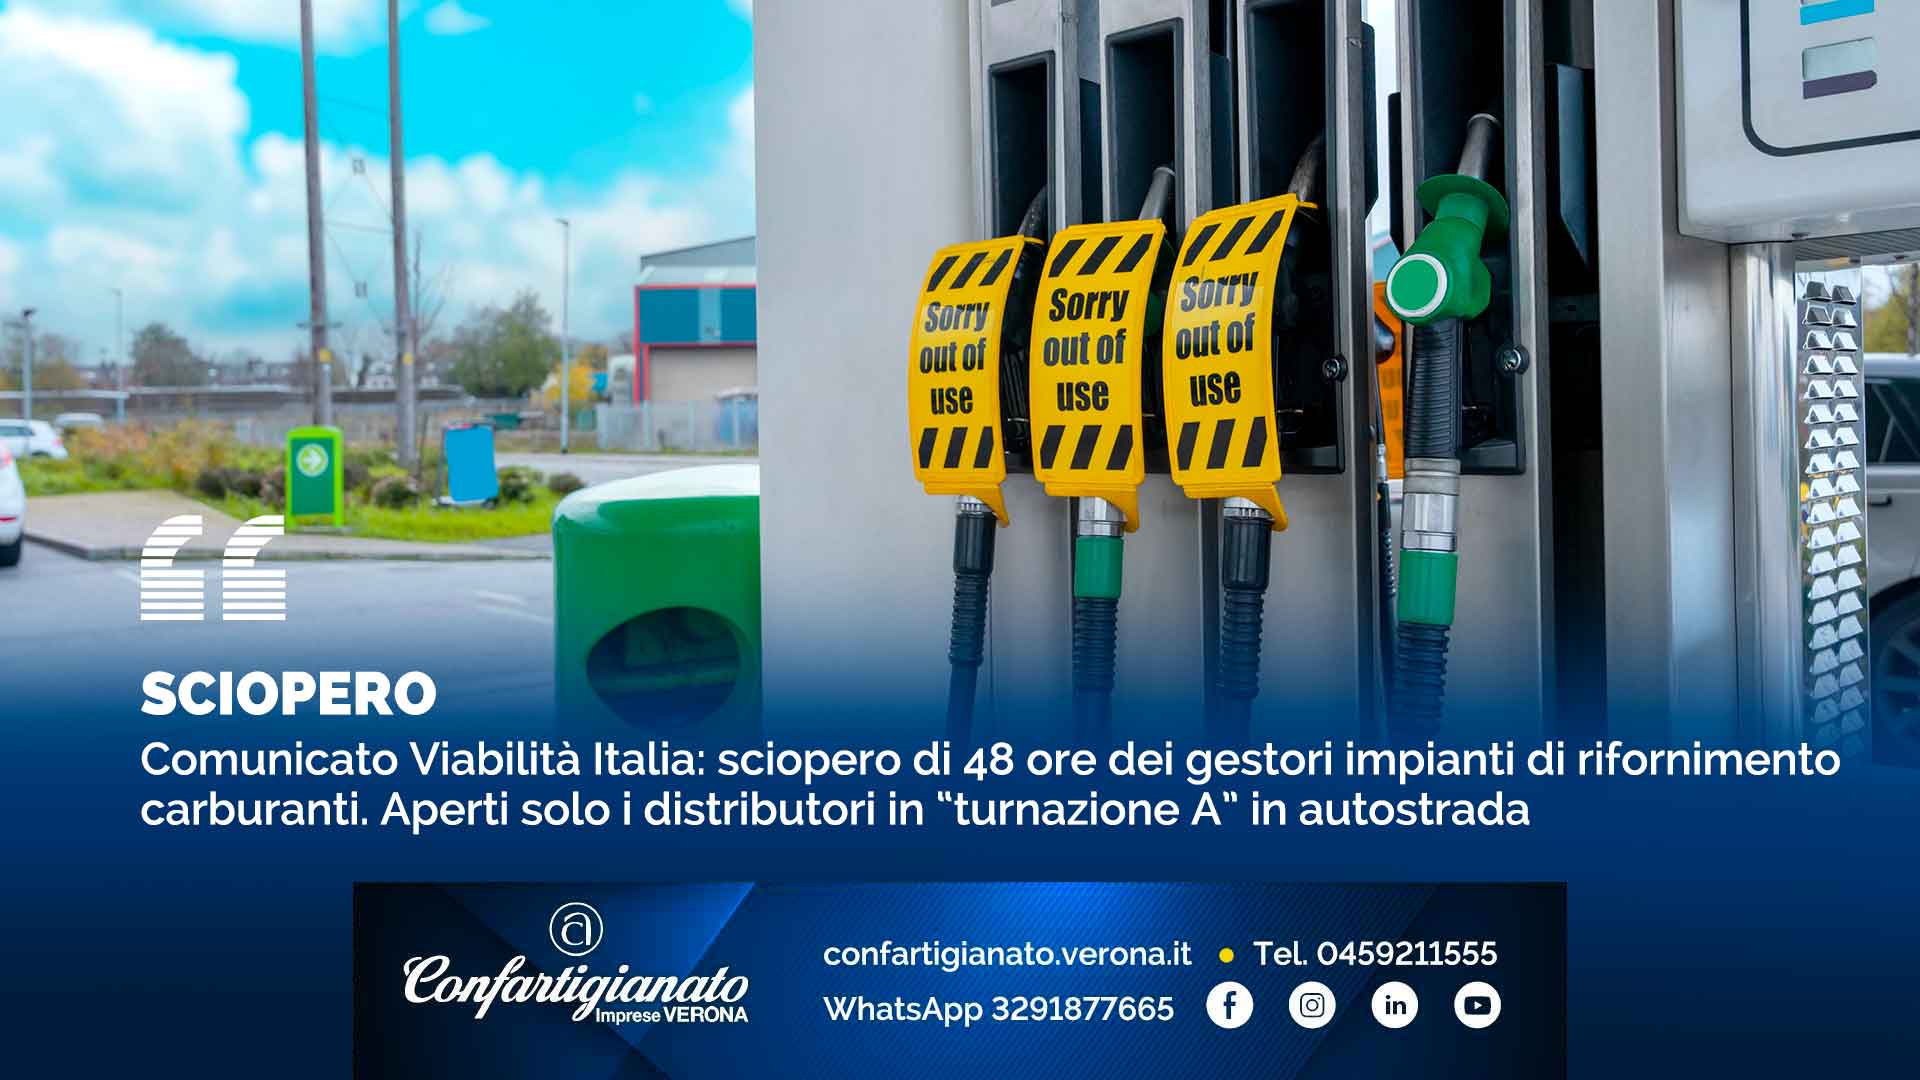 SCIOPERO – Comunicato Viabilità Italia: sciopero di 48 ore dei gestori impianti di rifornimento carburanti. Aperti solo i distributori in “turnazione A” in autostrada